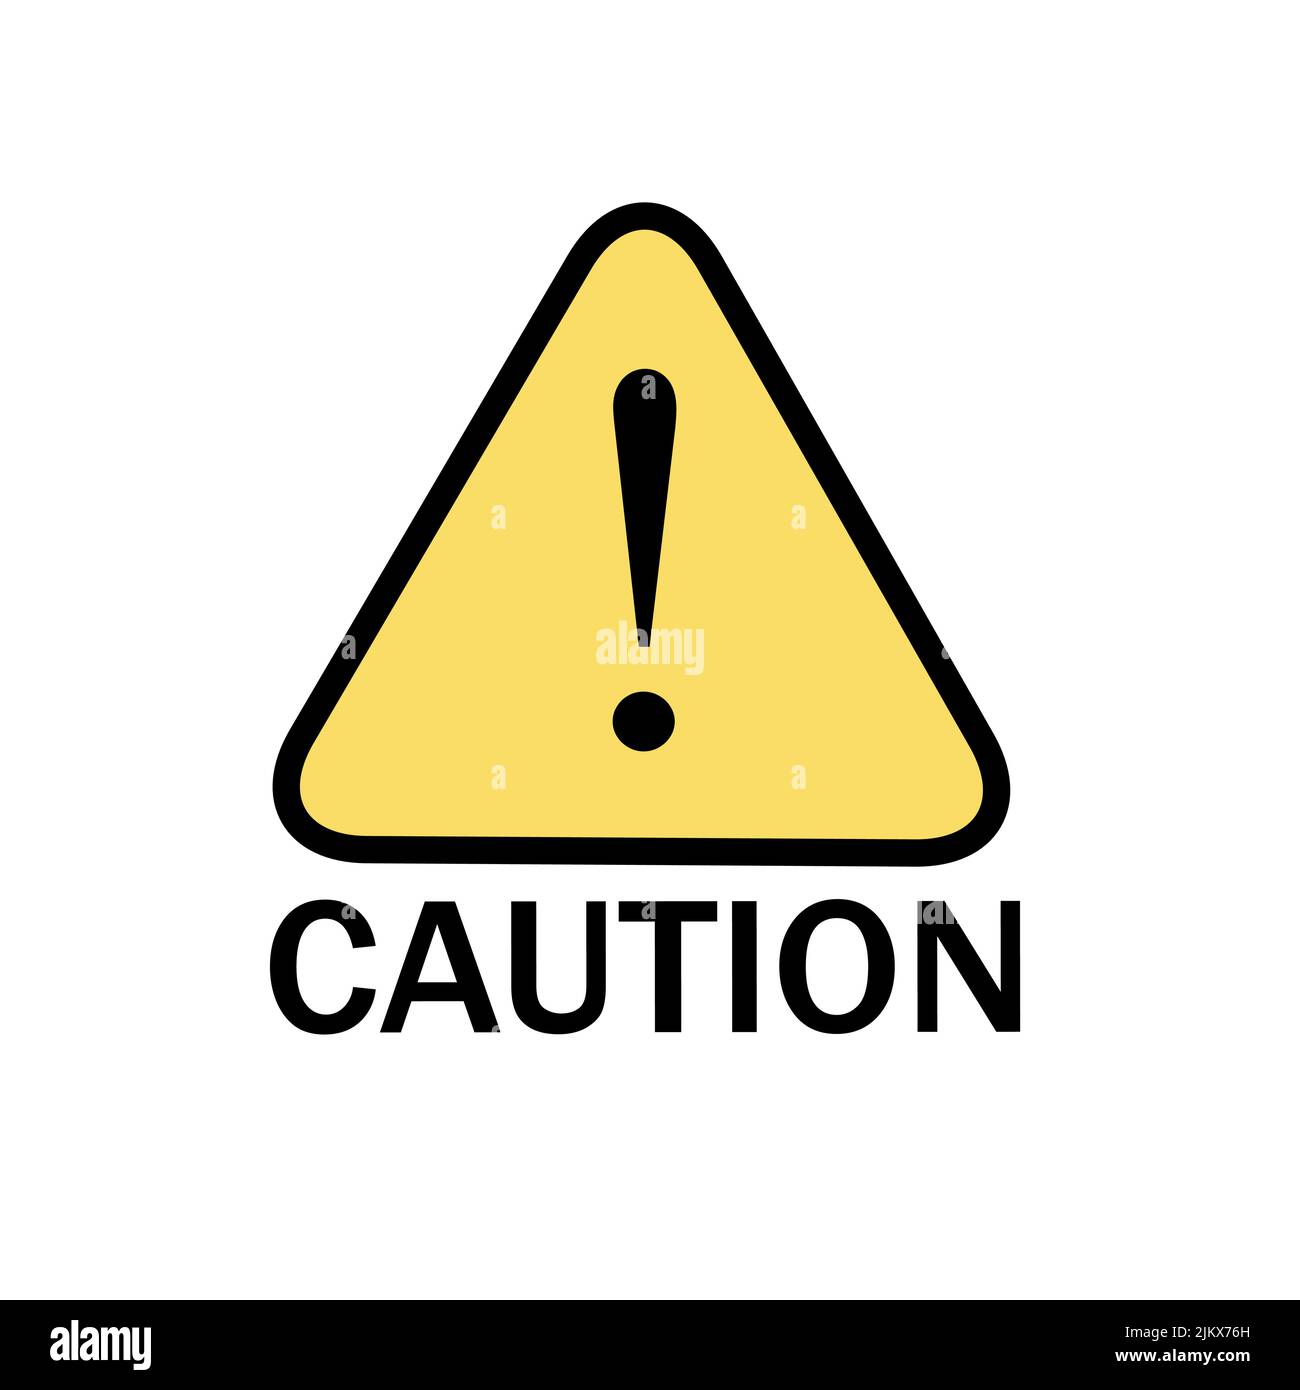 Warnschild Warnsymbol Vorsicht gelbes Symbol Gefahr Dreieck. Sicherheits-Vektor-Abbildung. Einfache Vorsicht Straßenschild Ausrufezeichen Warnung Stock Vektor